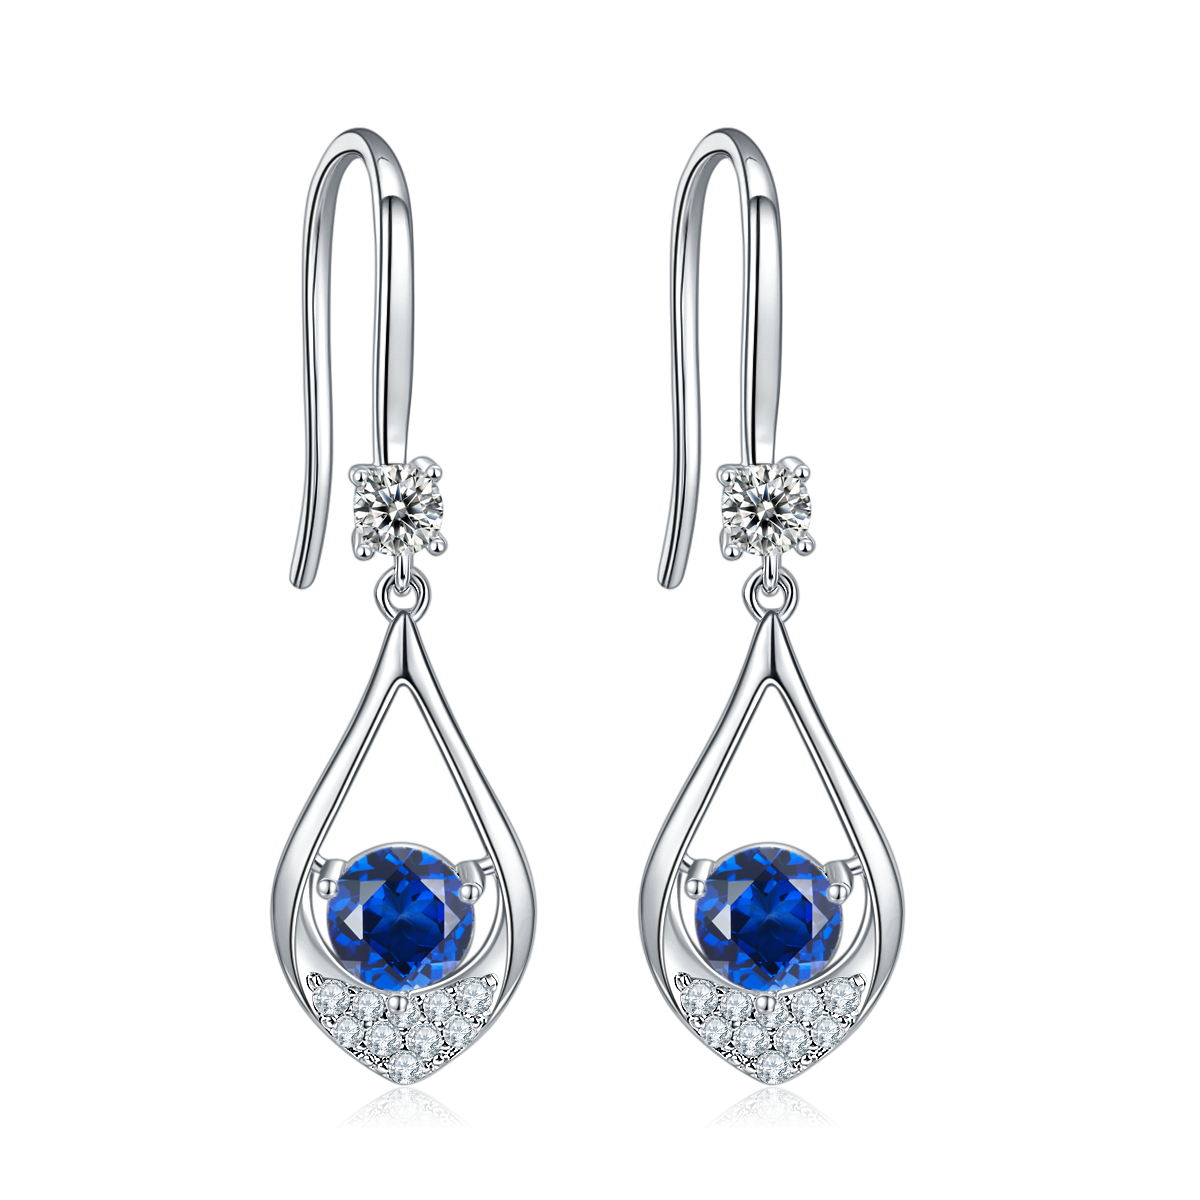 Blue Crystal Teardrop Earrings for Women